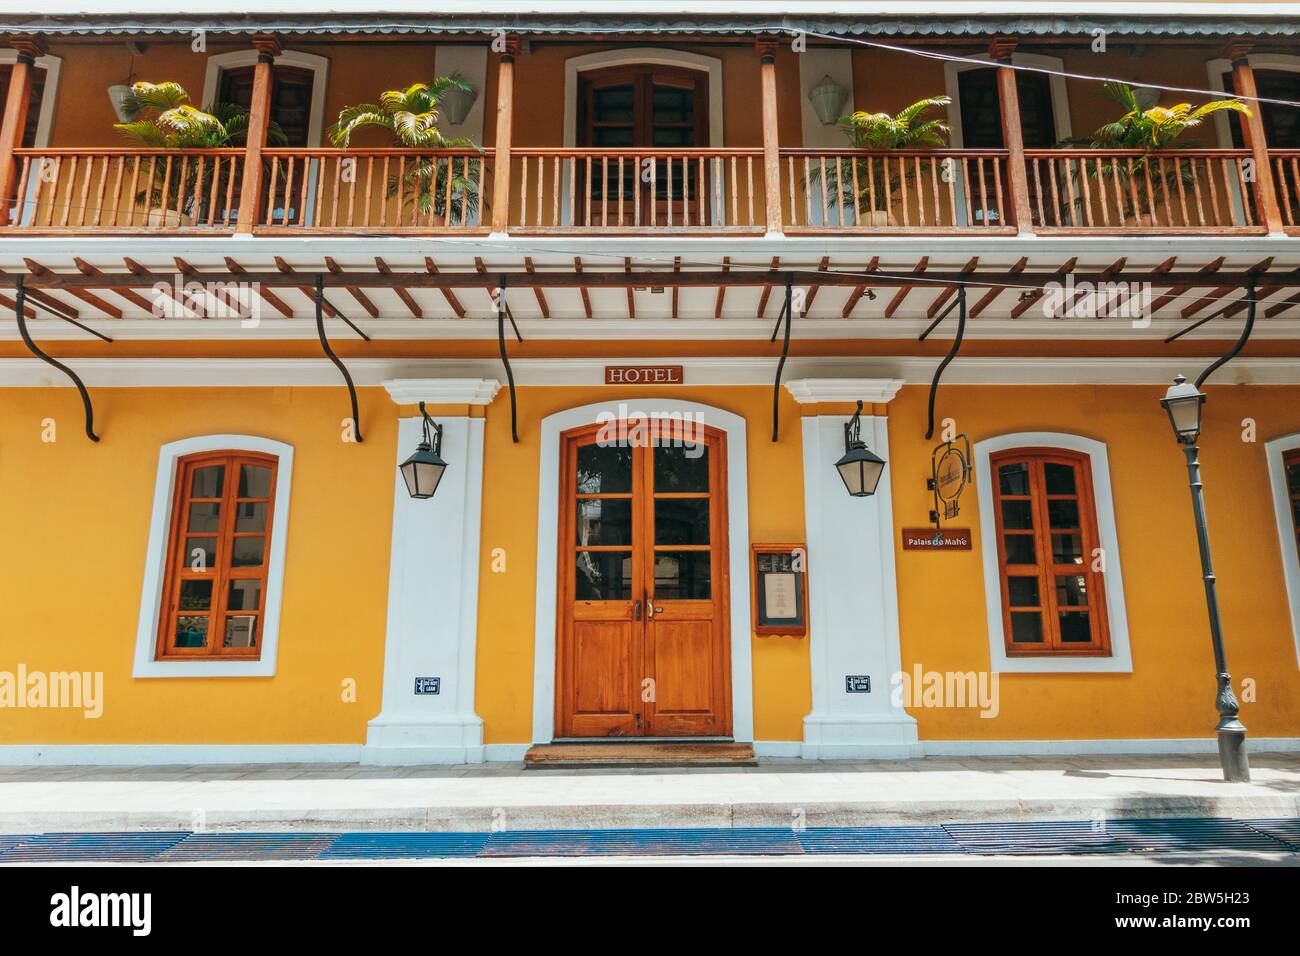 Hôtel situé dans un bâtiment restauré de l'époque coloniale française, doté de menuiserie en bois, à White Town, Pondichéry, en Inde Banque D'Images